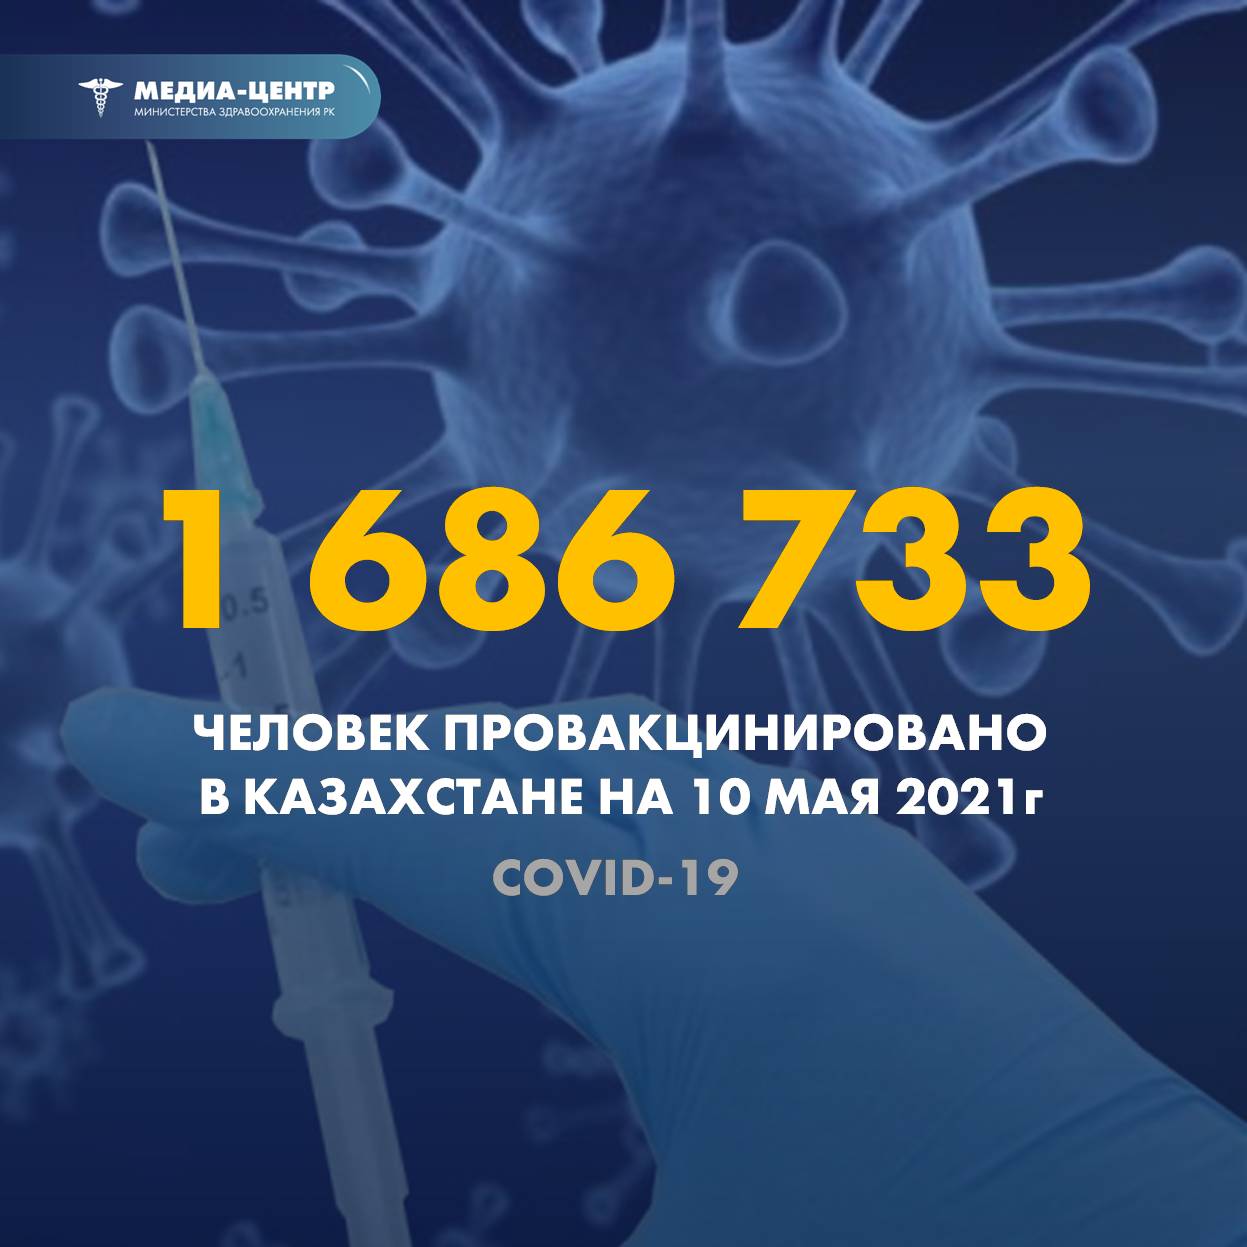 1 686 733 человек провакцинировано в Казахстане на 10 мая 2021 г